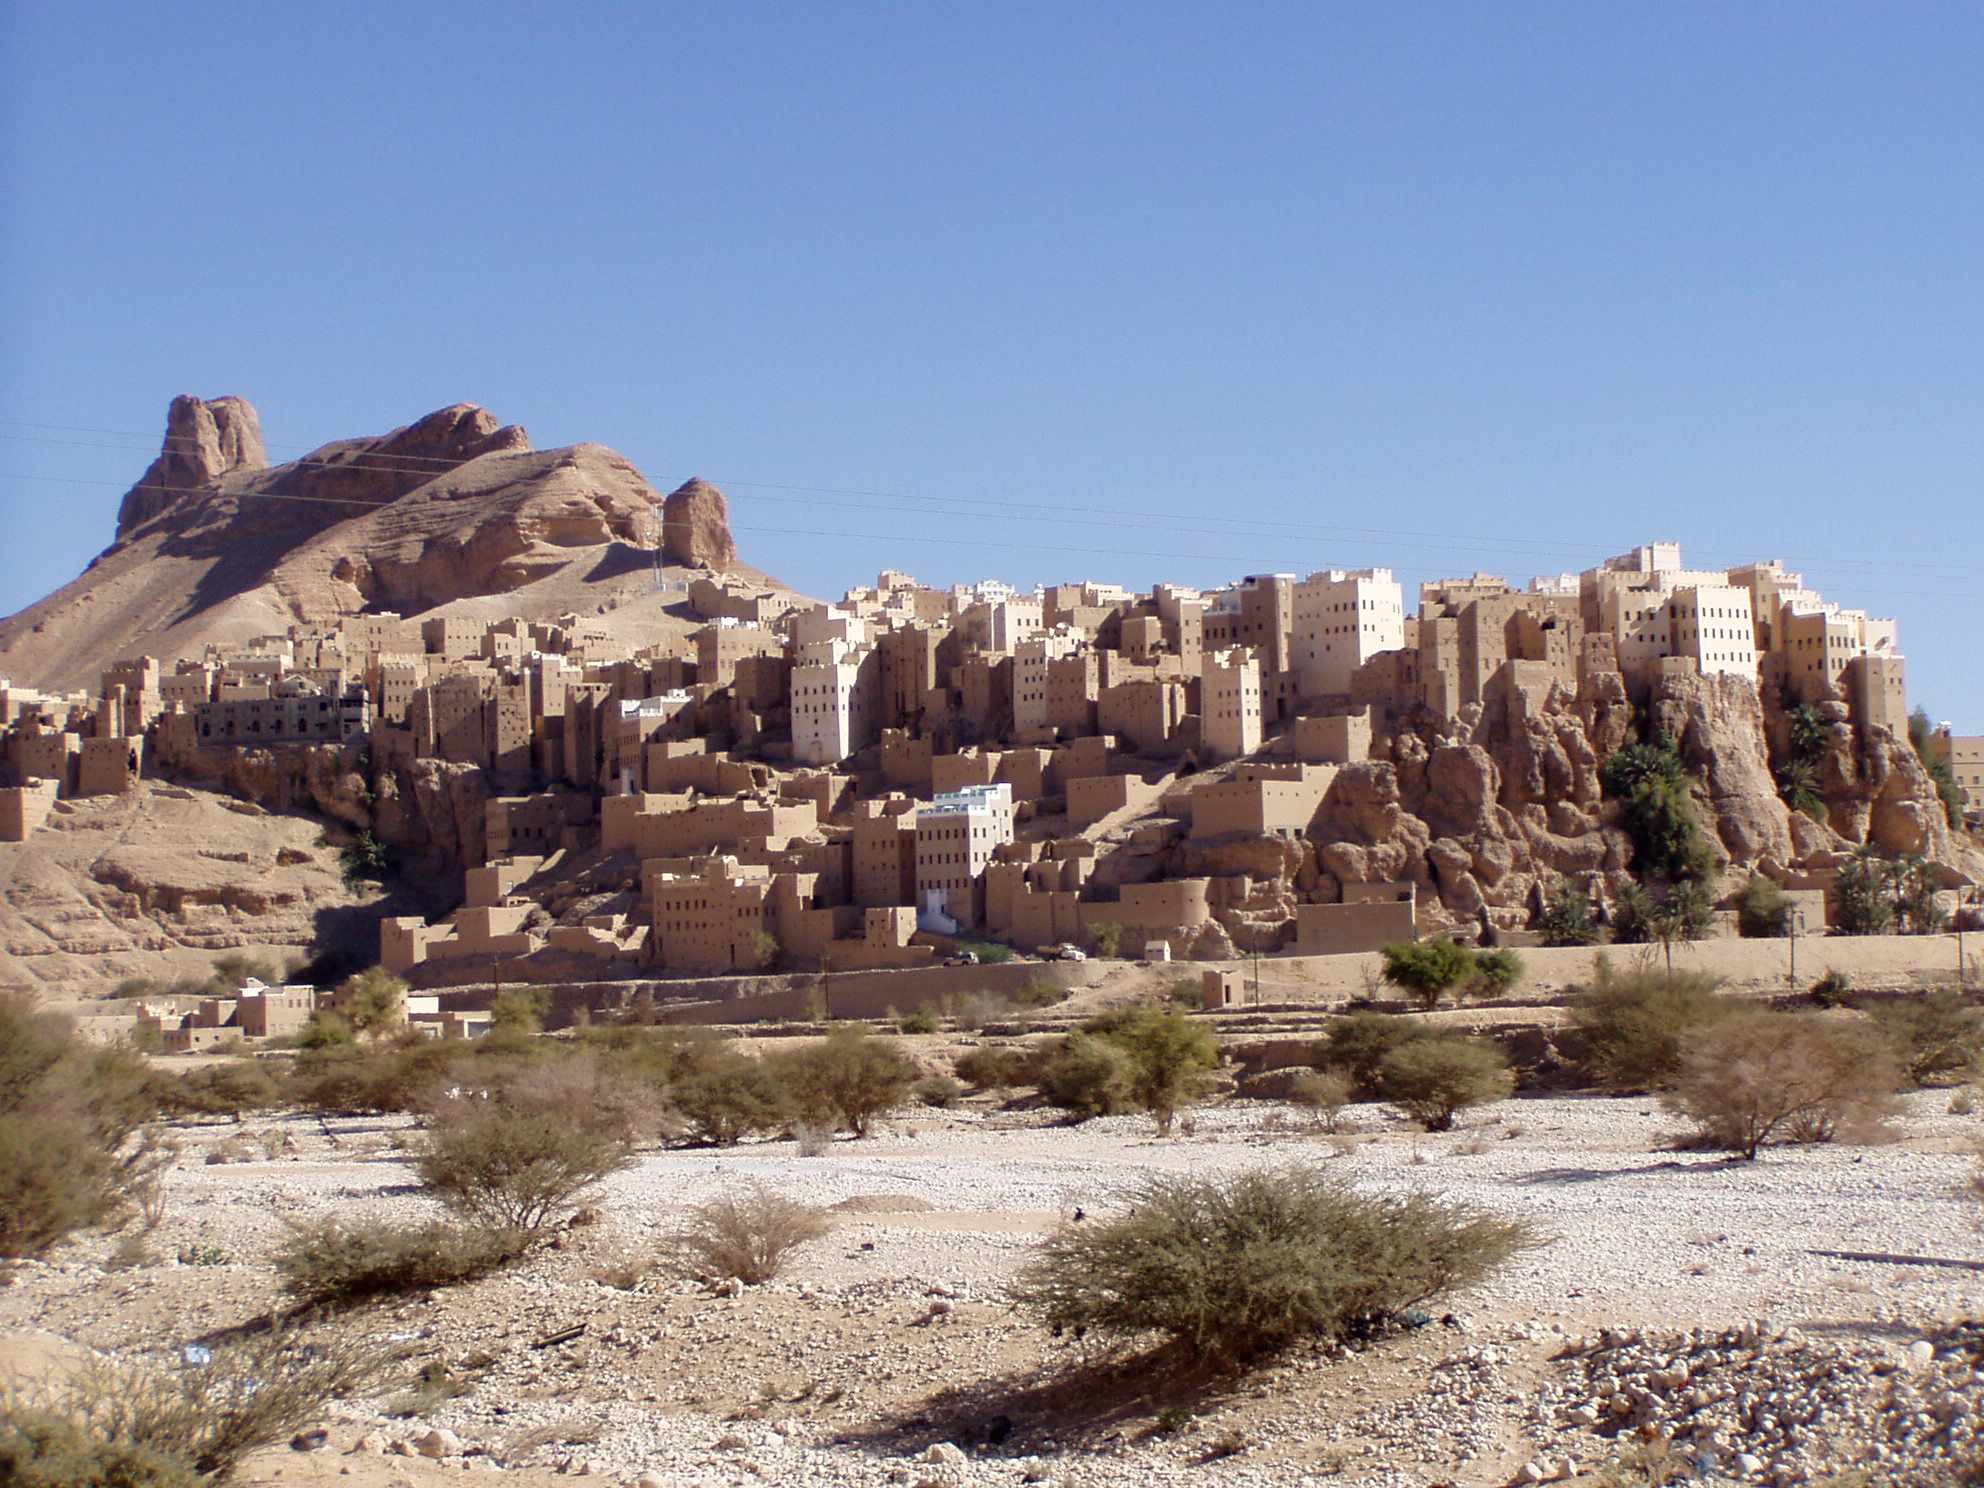 Adeiladodd y pentref anhygoel yn Yemen ar floc roc enfawr 150 metr o uchder 2